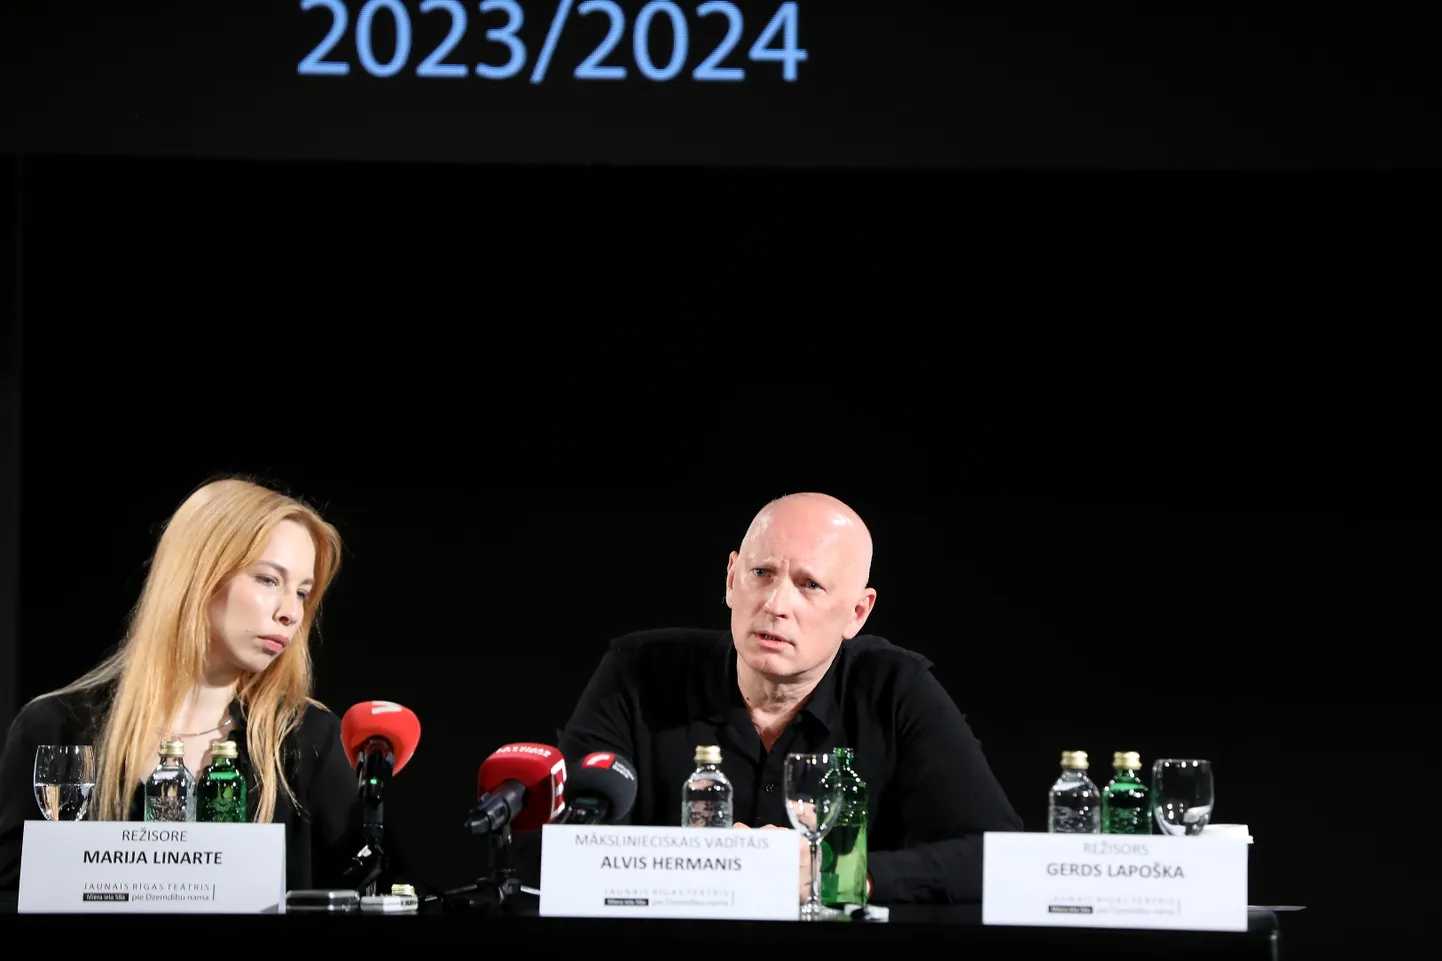 Režisore Marija Linarte un Jaunā Rīgas teātra  mākslinieciskais vadītājs Alvis Hermanis piedalās Jaunā Rīgas teātra 2023./2024. gada teātra sezonai veltītajā preses konferencē.